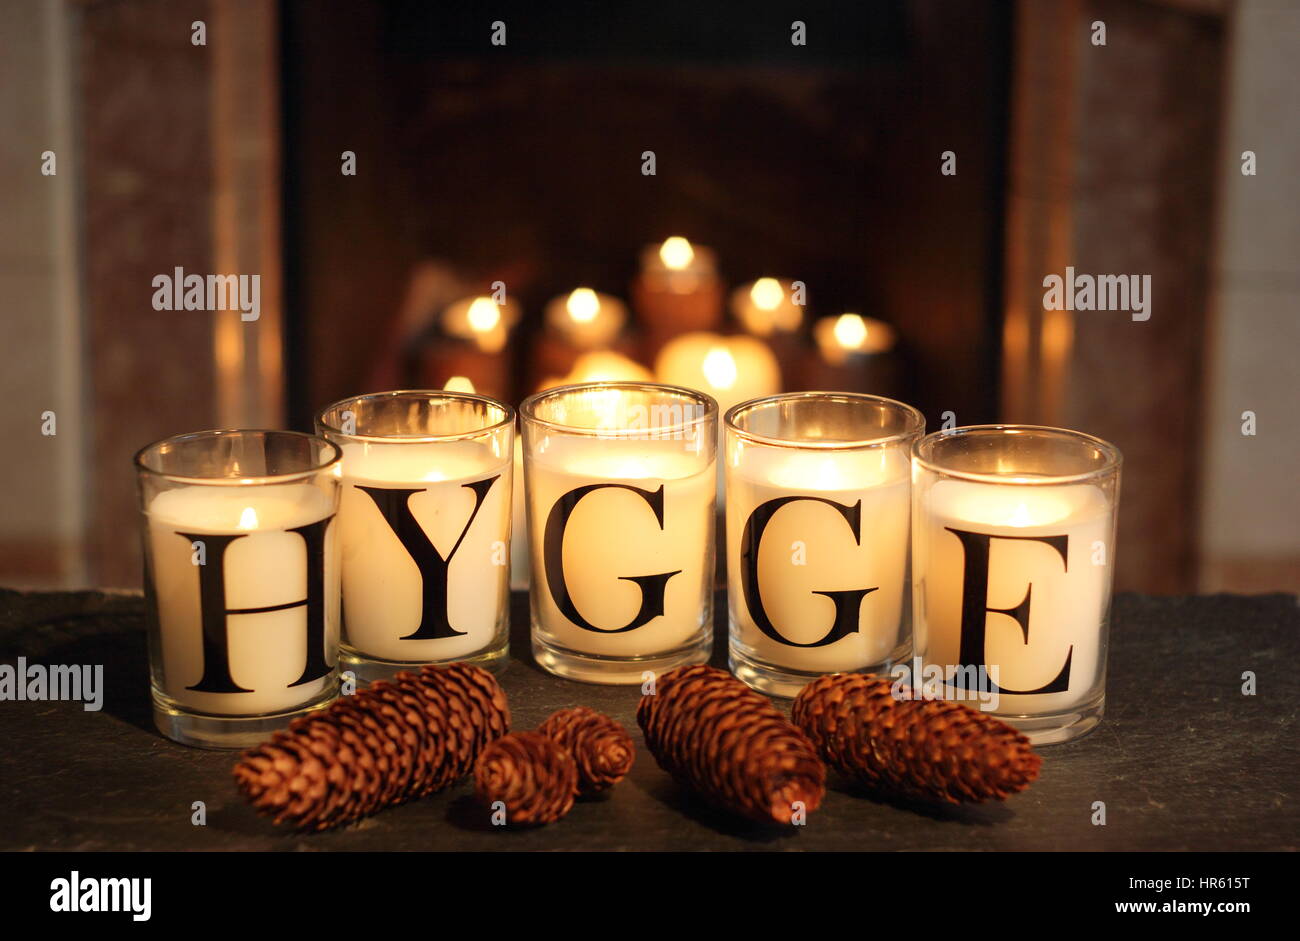 Fireside candele in un inglese home inverno raffigurano "hygge' - il concetto danese di abbracciando accoglienti appagamento e convivialità Foto Stock